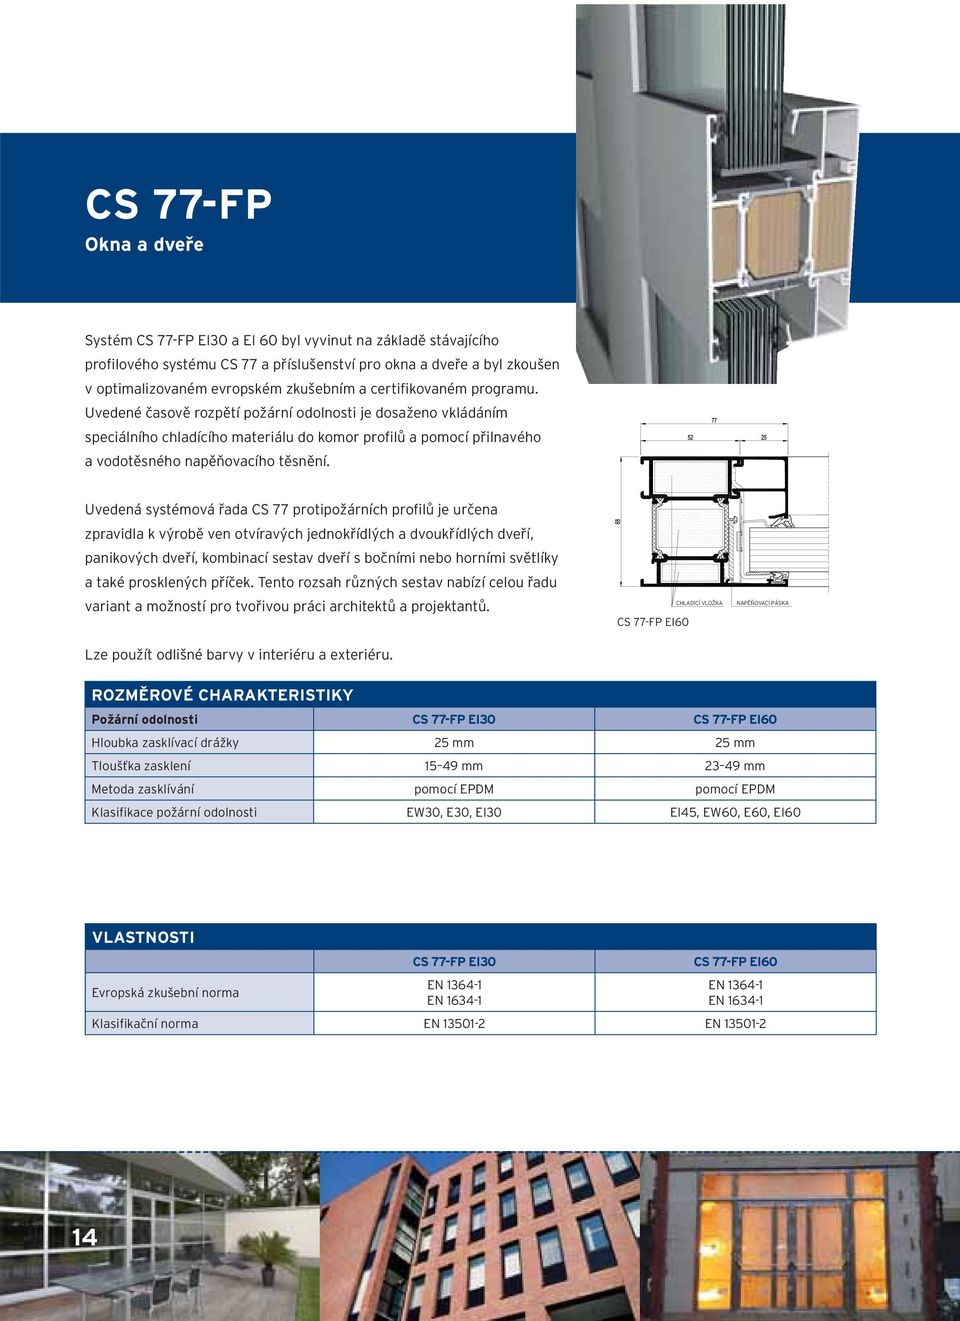 Uvedená systémová řada CS 77 protipožárních profilů je určena zpravidla k výrobě ven otvíravých jednokřídlých a dvoukřídlých dveří, panikových dveří, kombinací sestav dveří s bočními nebo horními